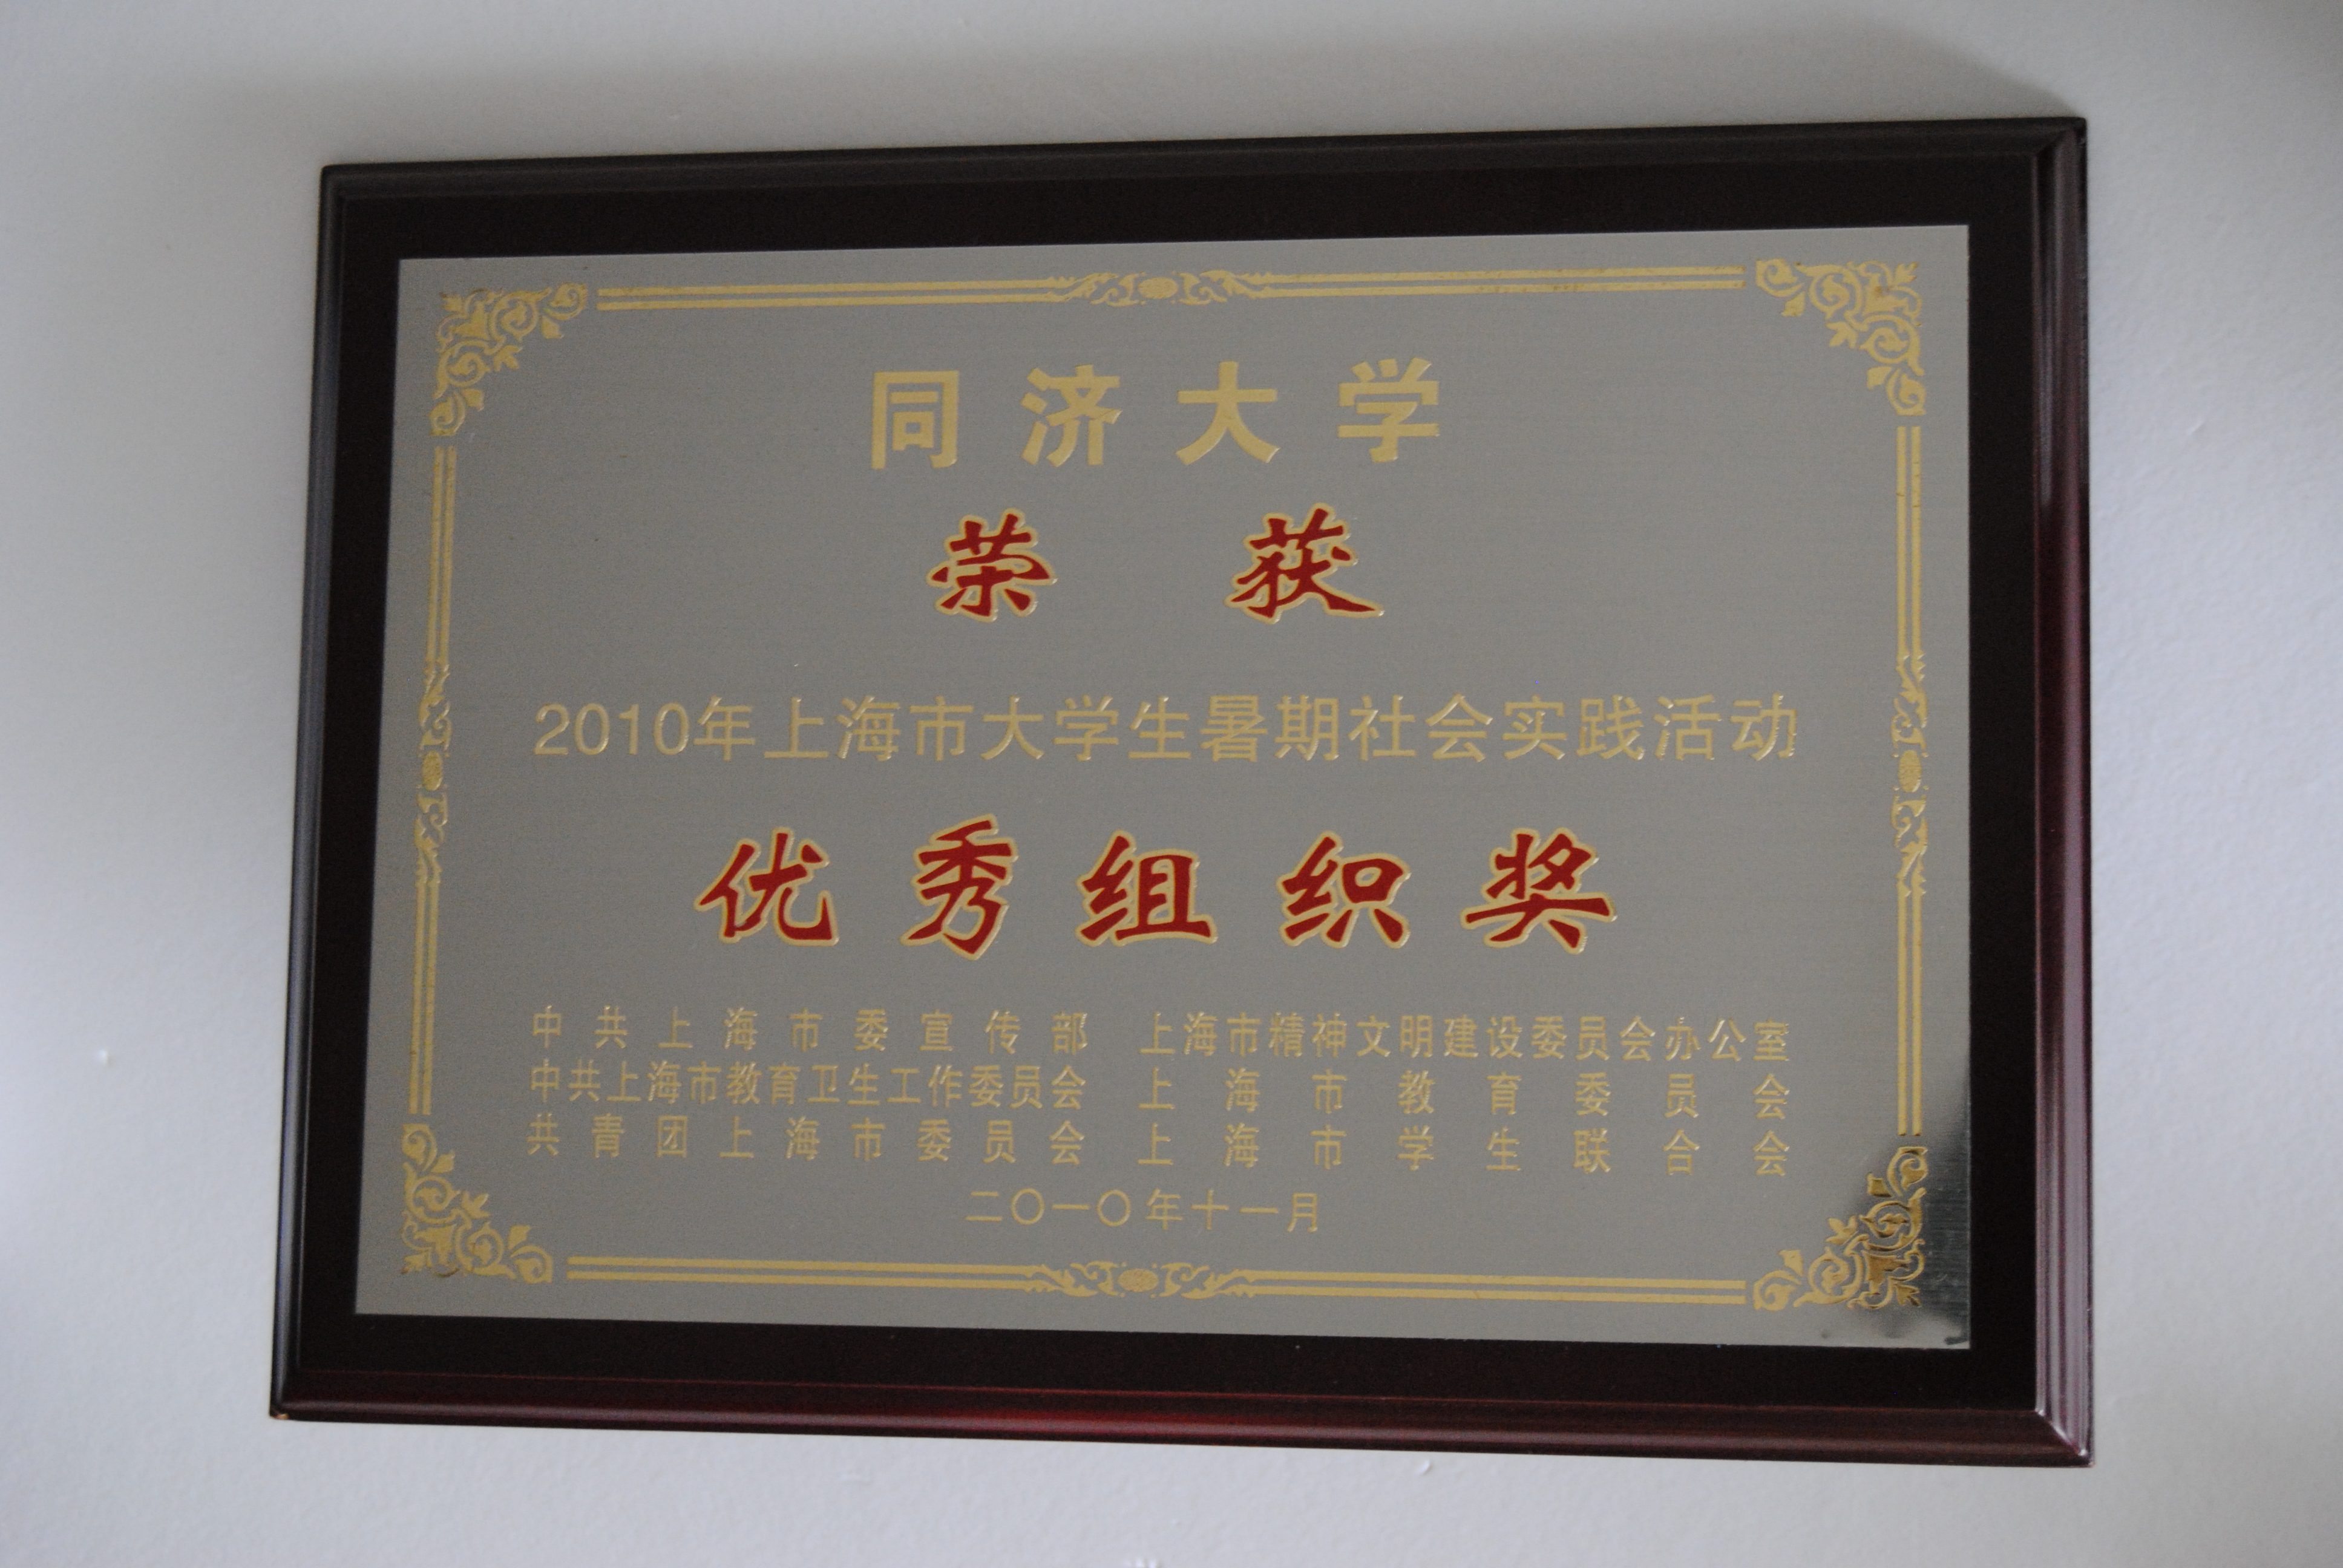 2010年上海市大学生暑期社会实践活动优秀组织奖